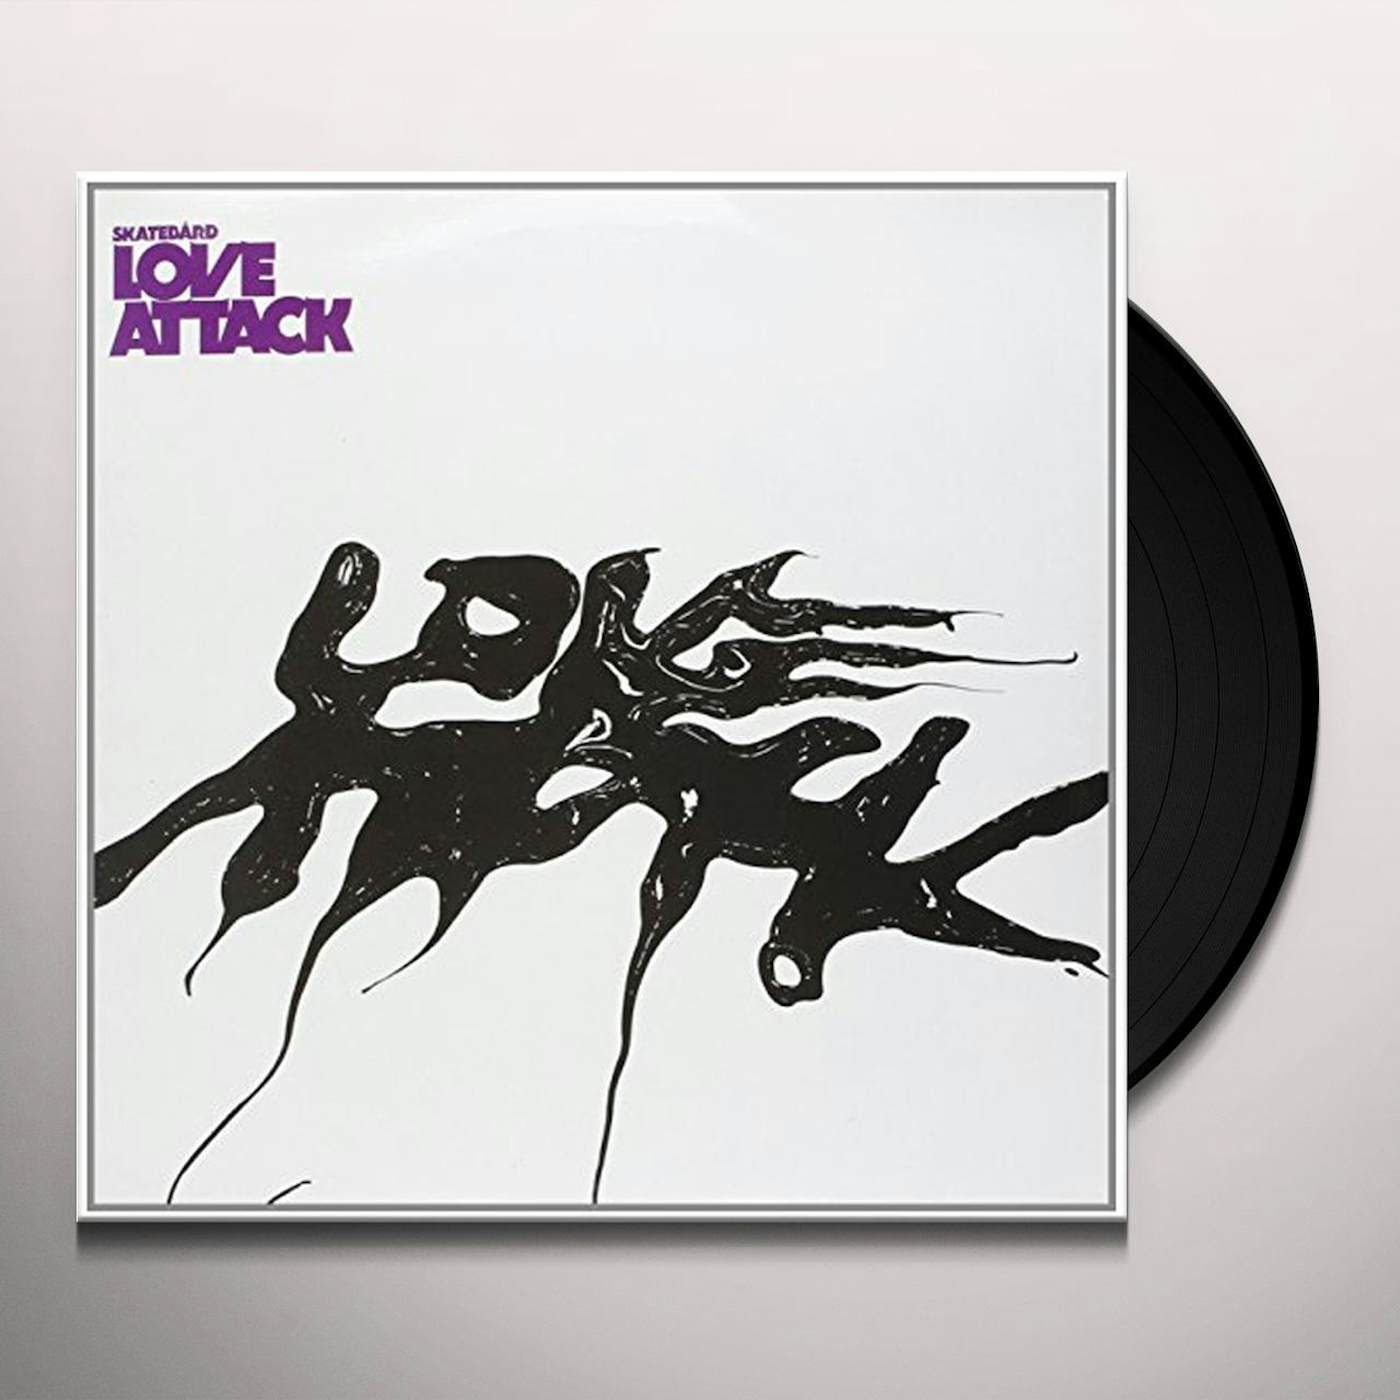 Skatebård Love Attack Vinyl Record